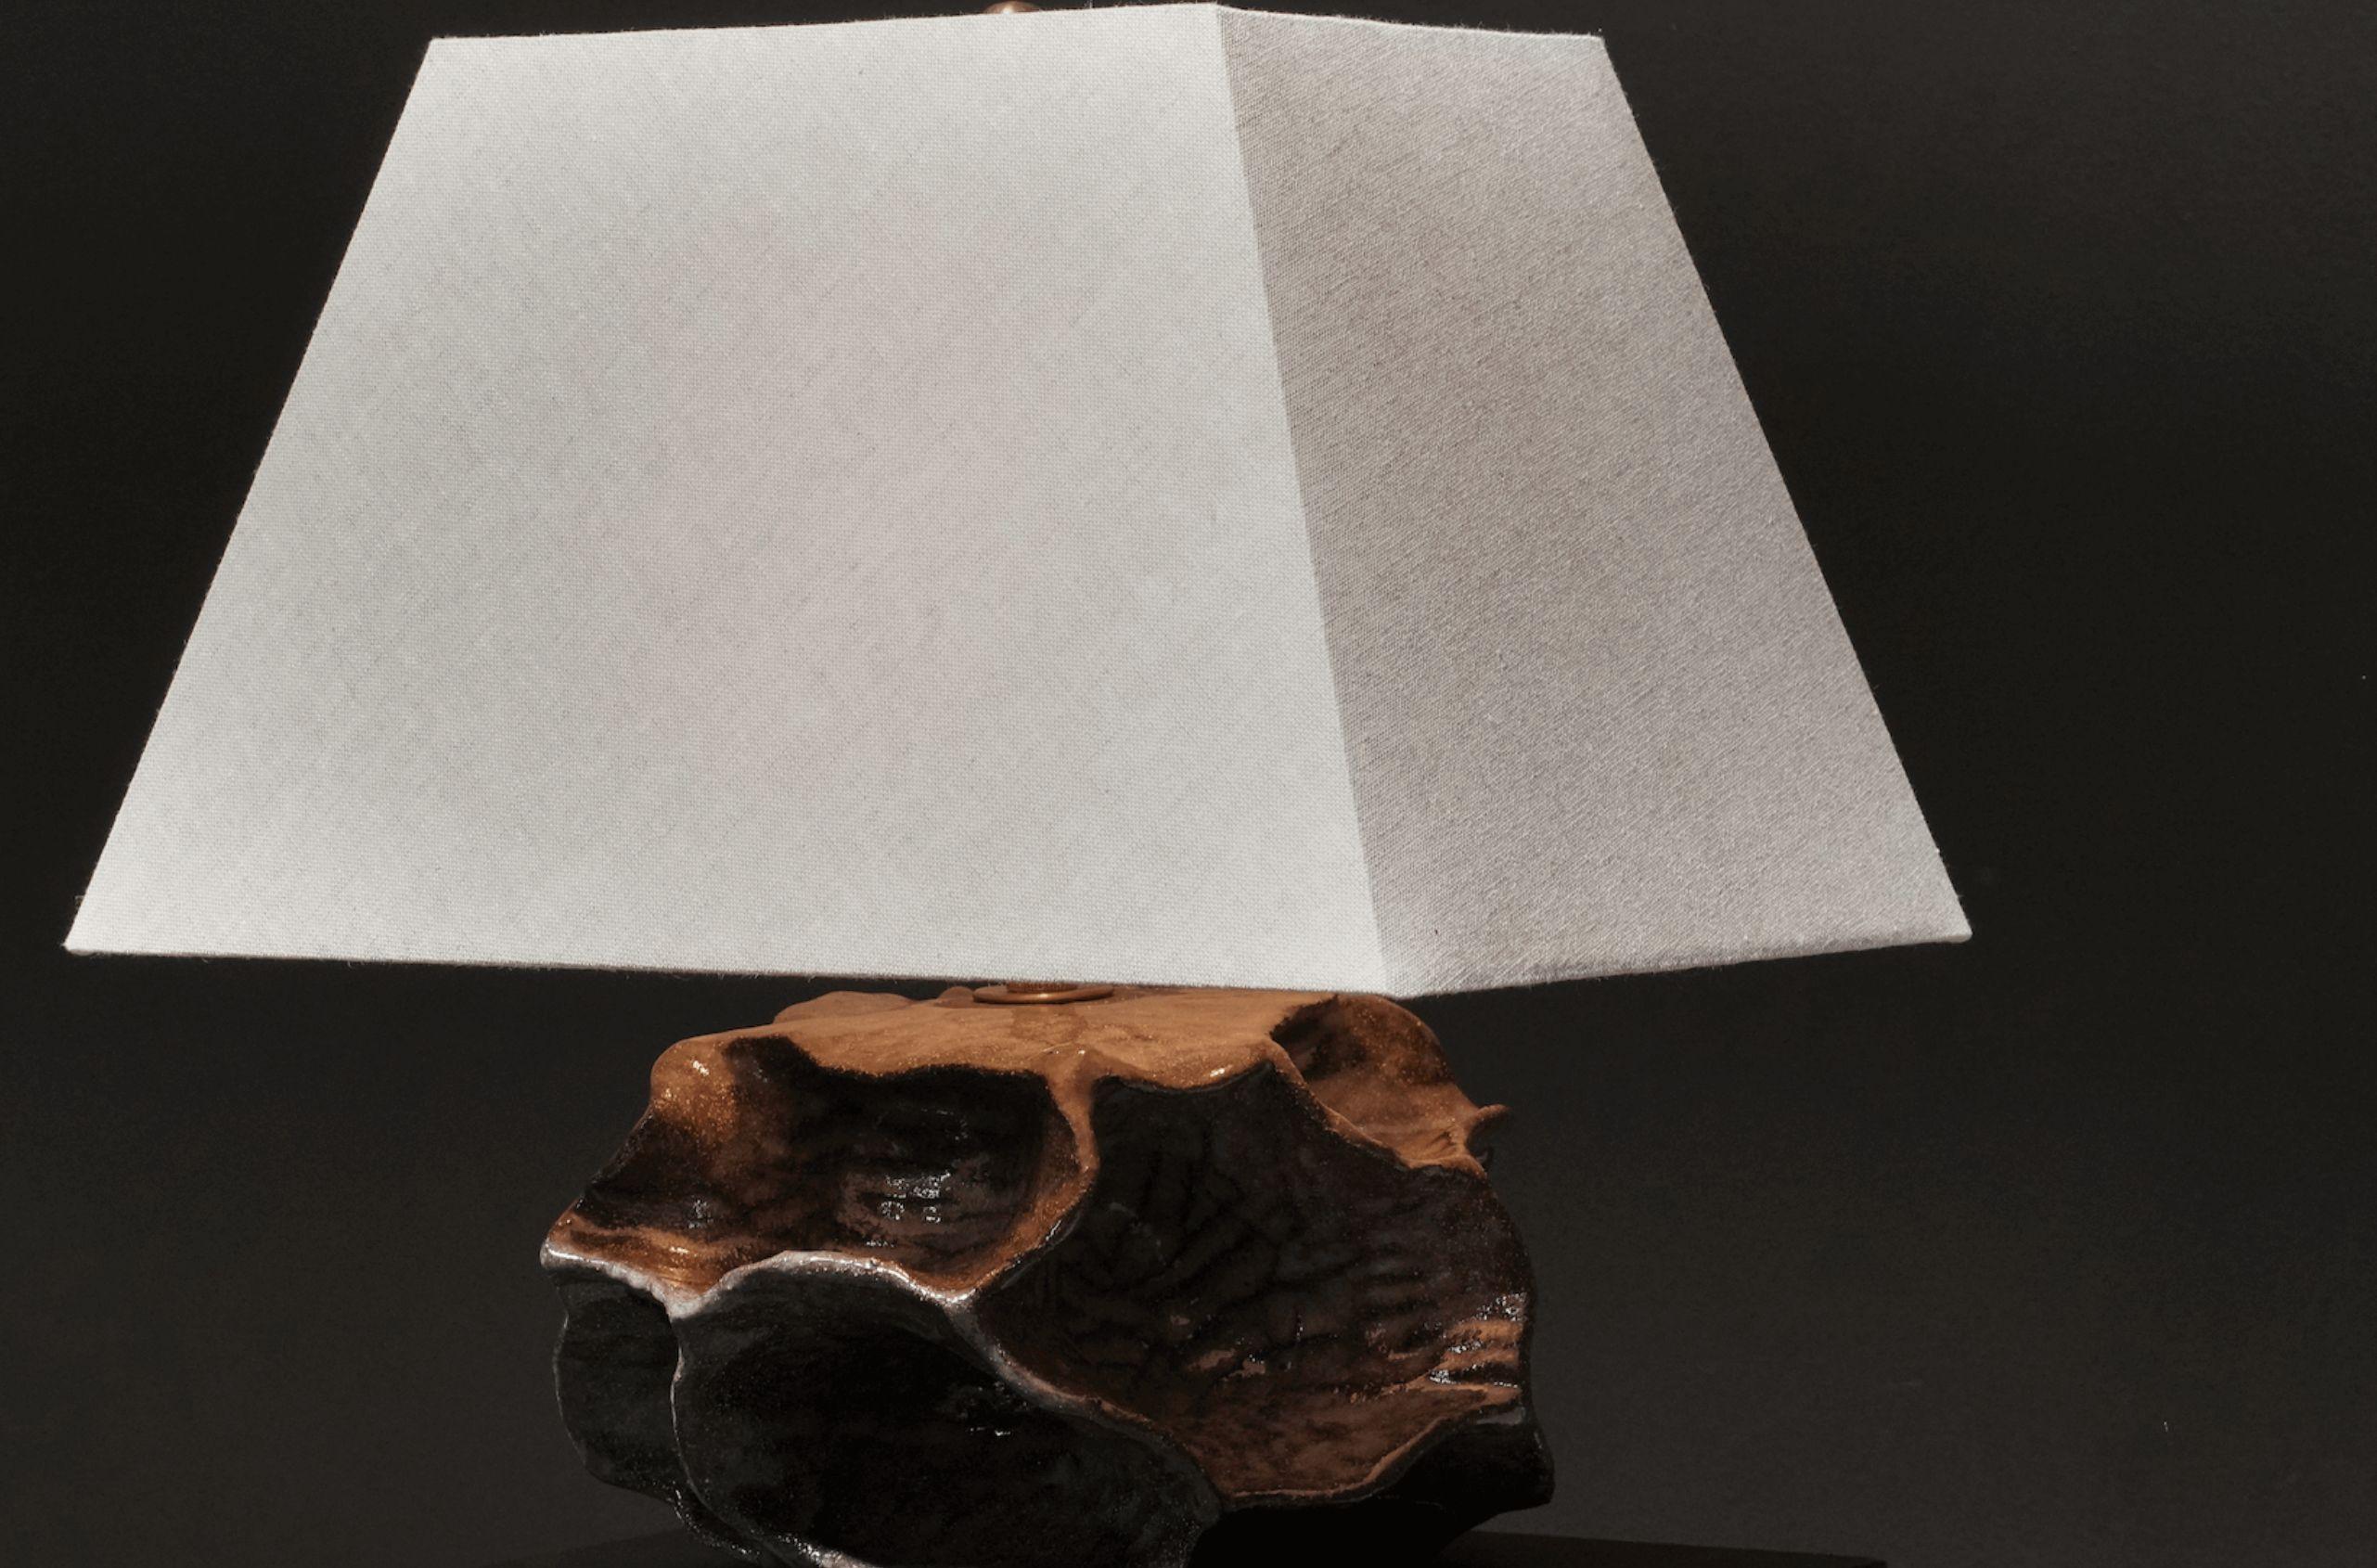 Materials: Ceramic
Origin: California
Dimensions: 15.25